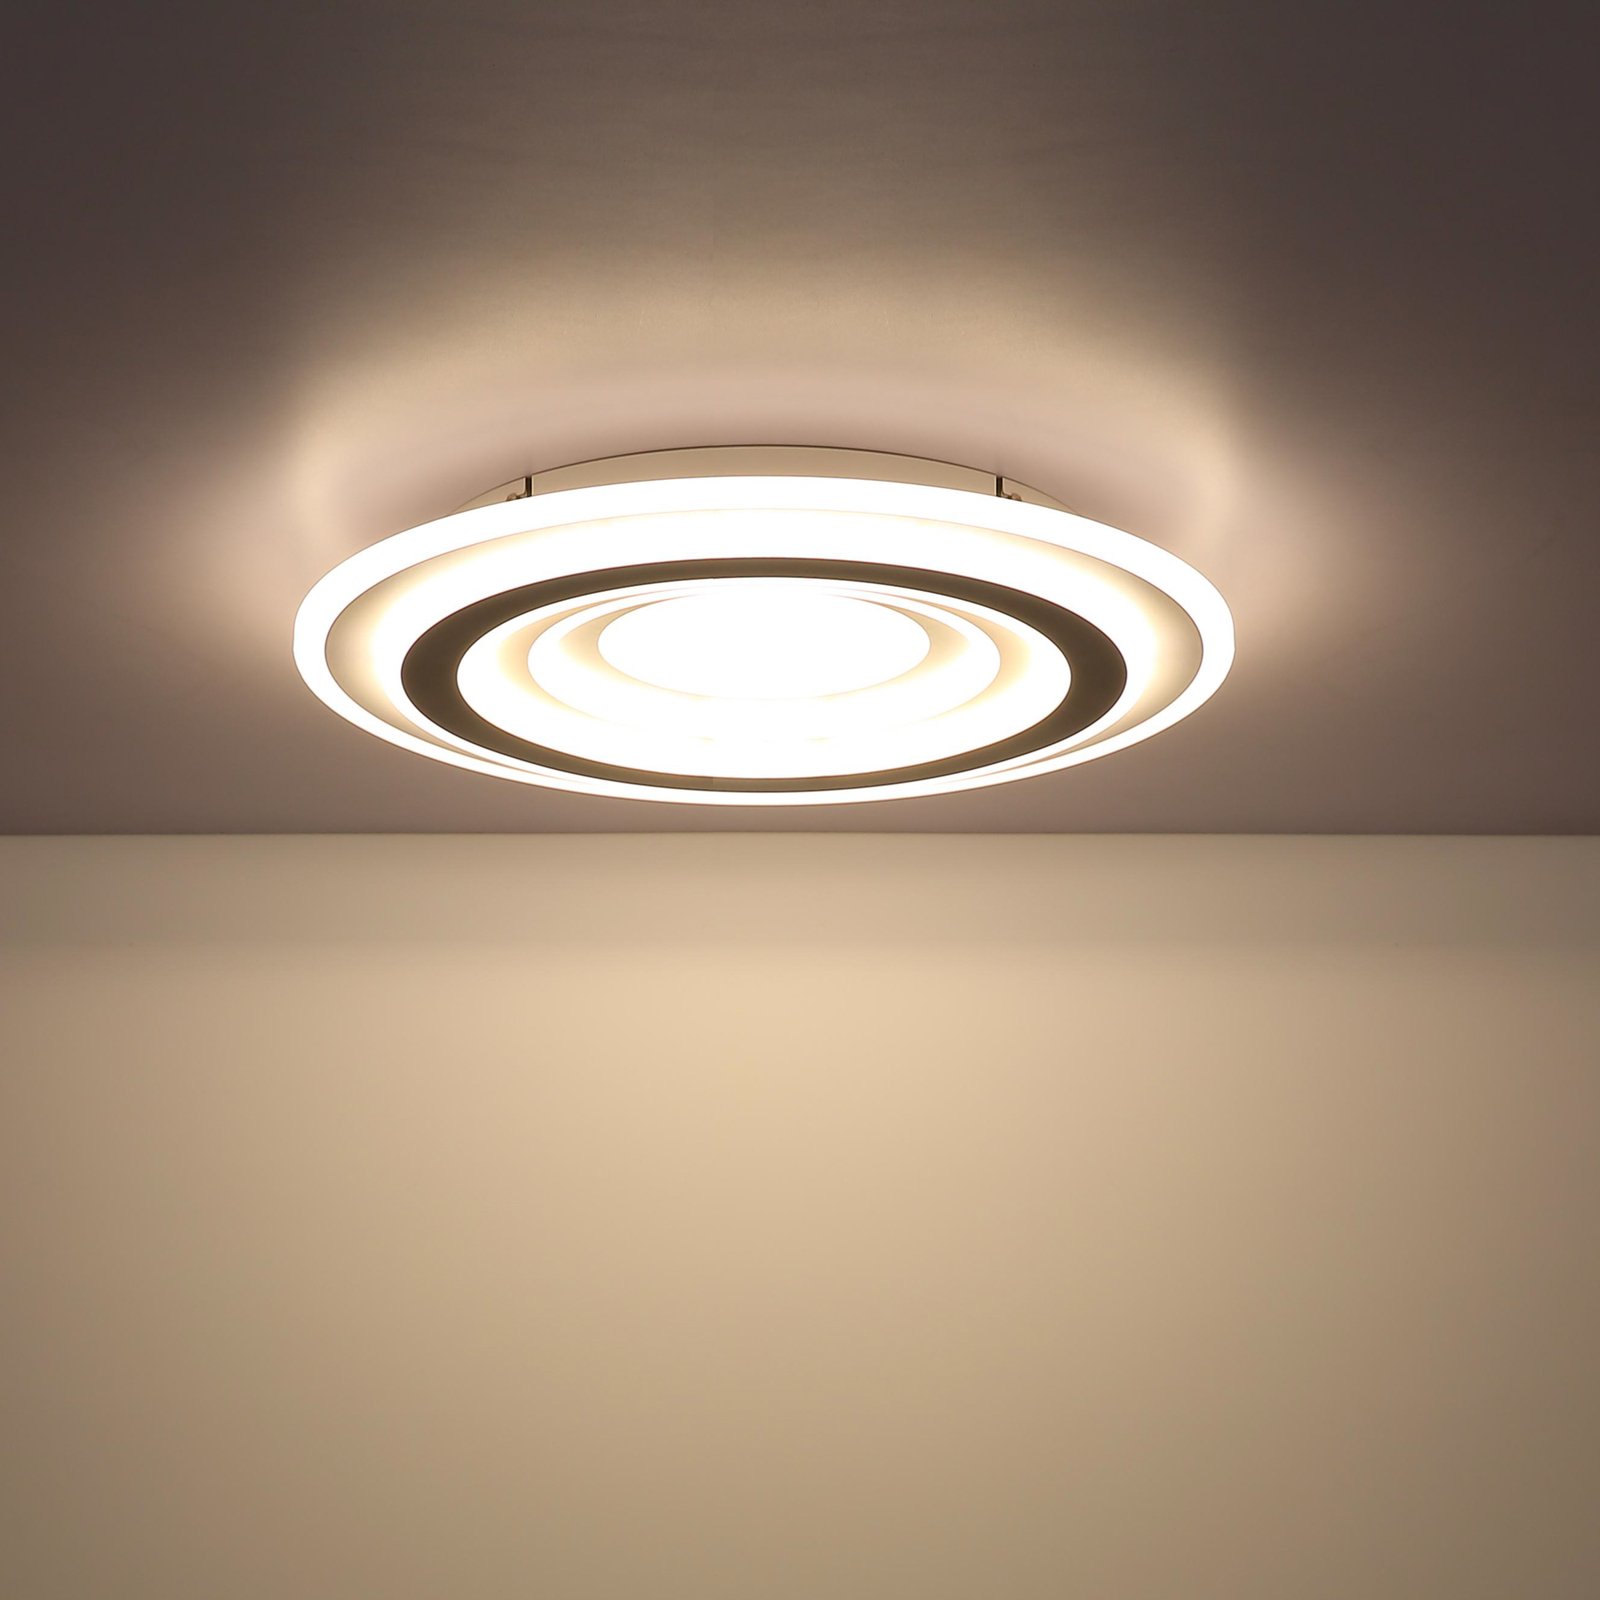 LED ceiling light Sabatino, white/anthracite, Ø 48 cm, CCT